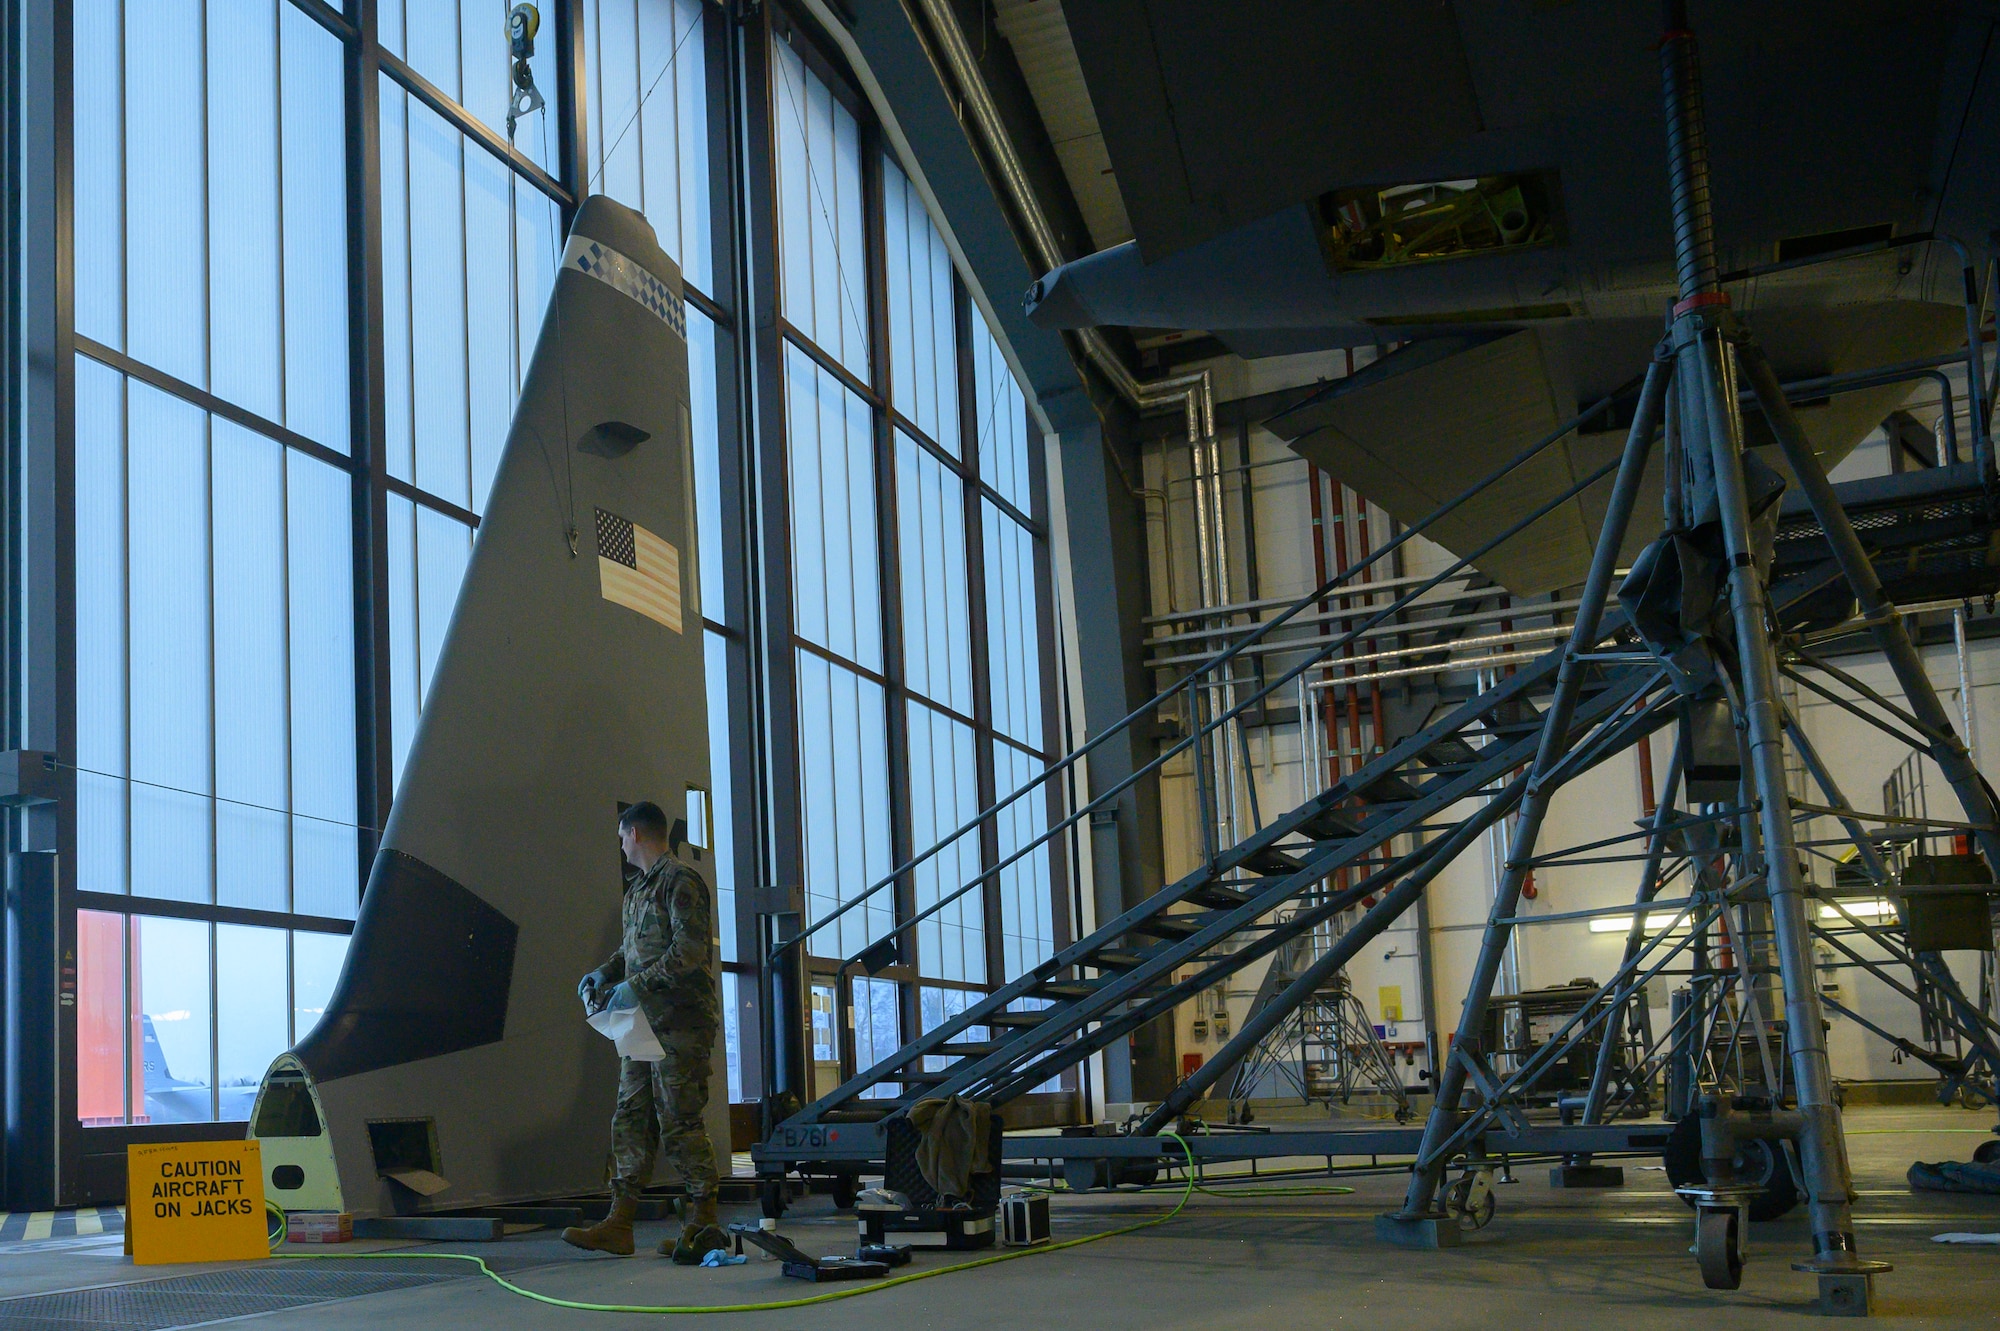 An Airman examines a C-130 tail.